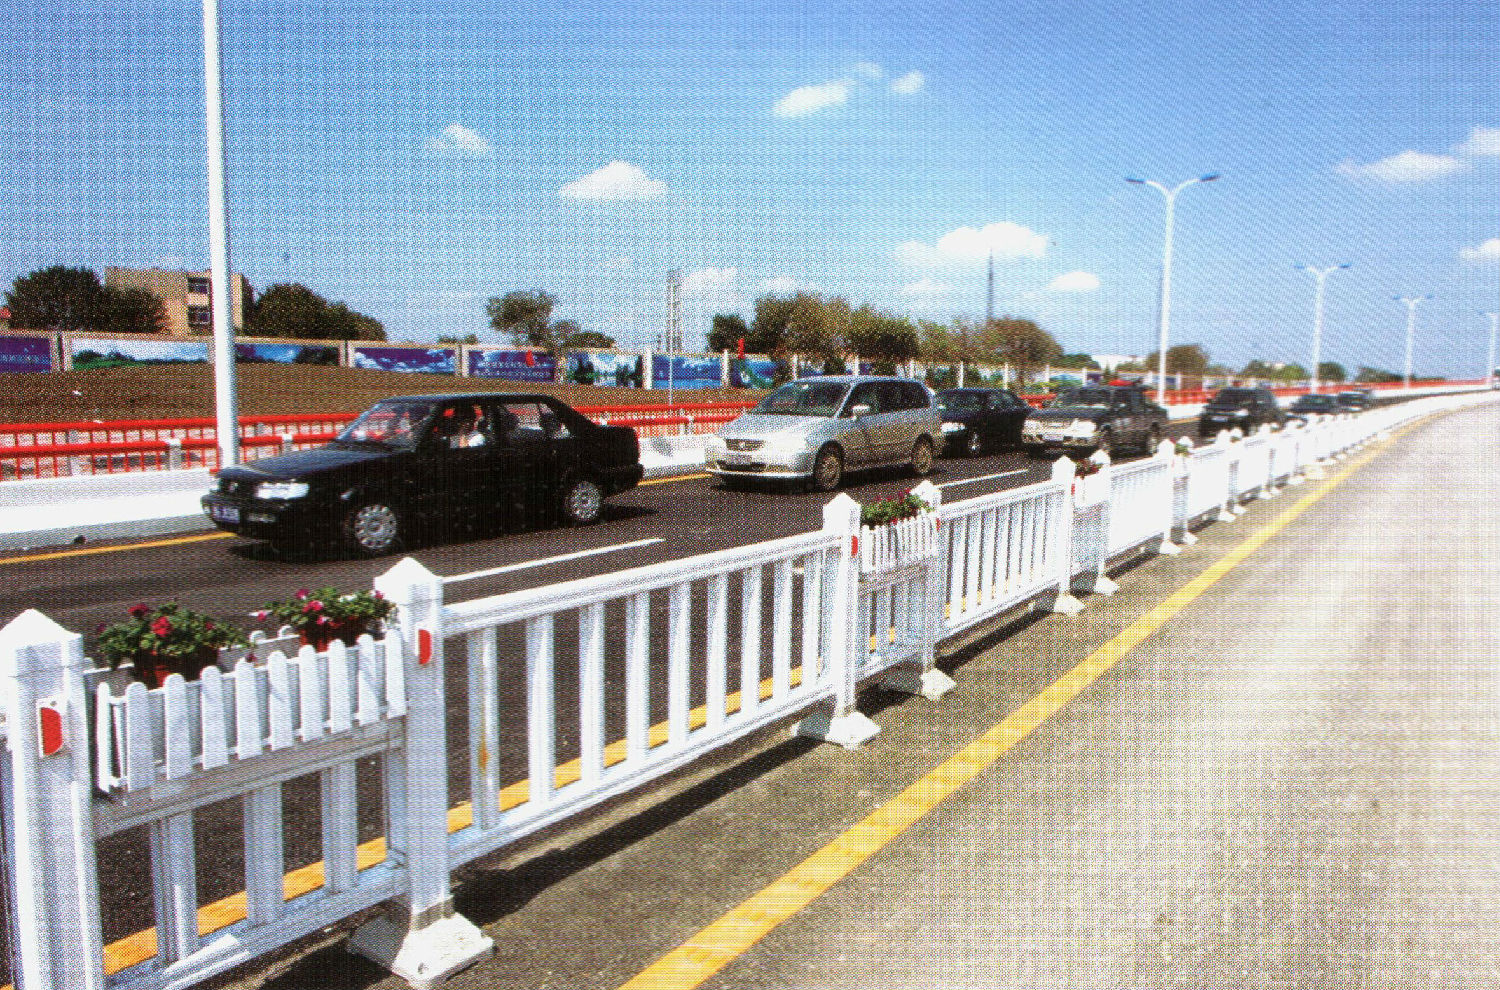 道路PVC护栏